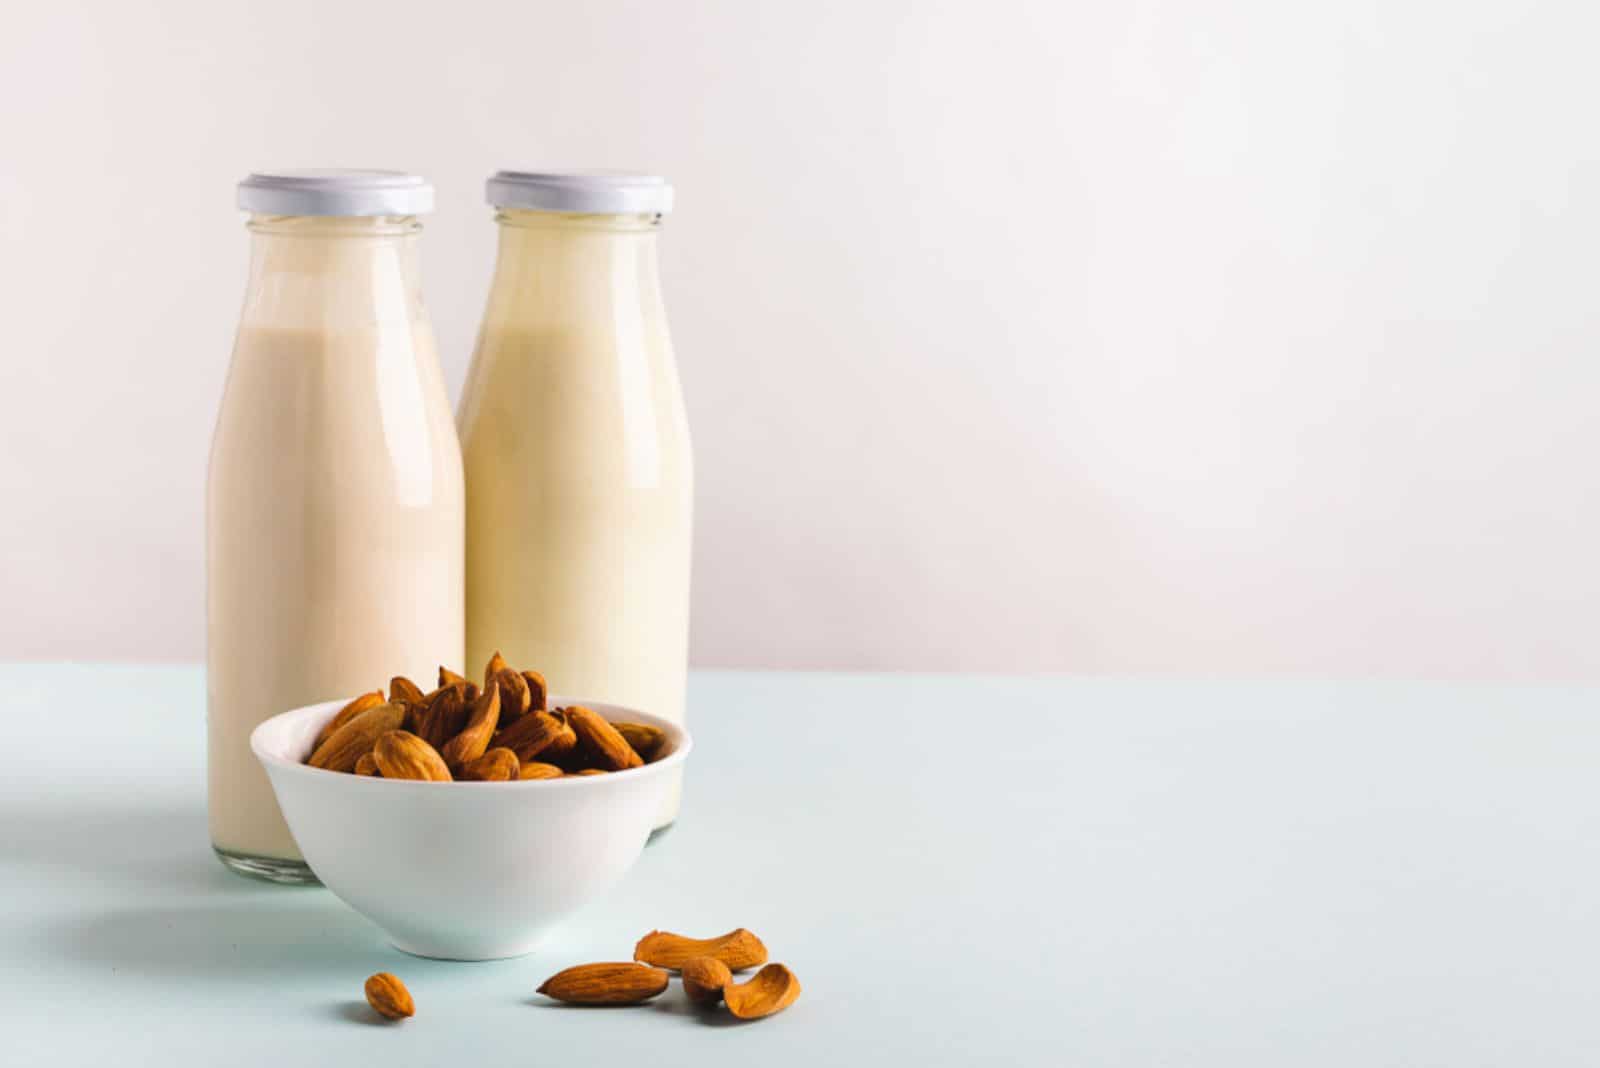 Almond nut milk drink in glass bottles